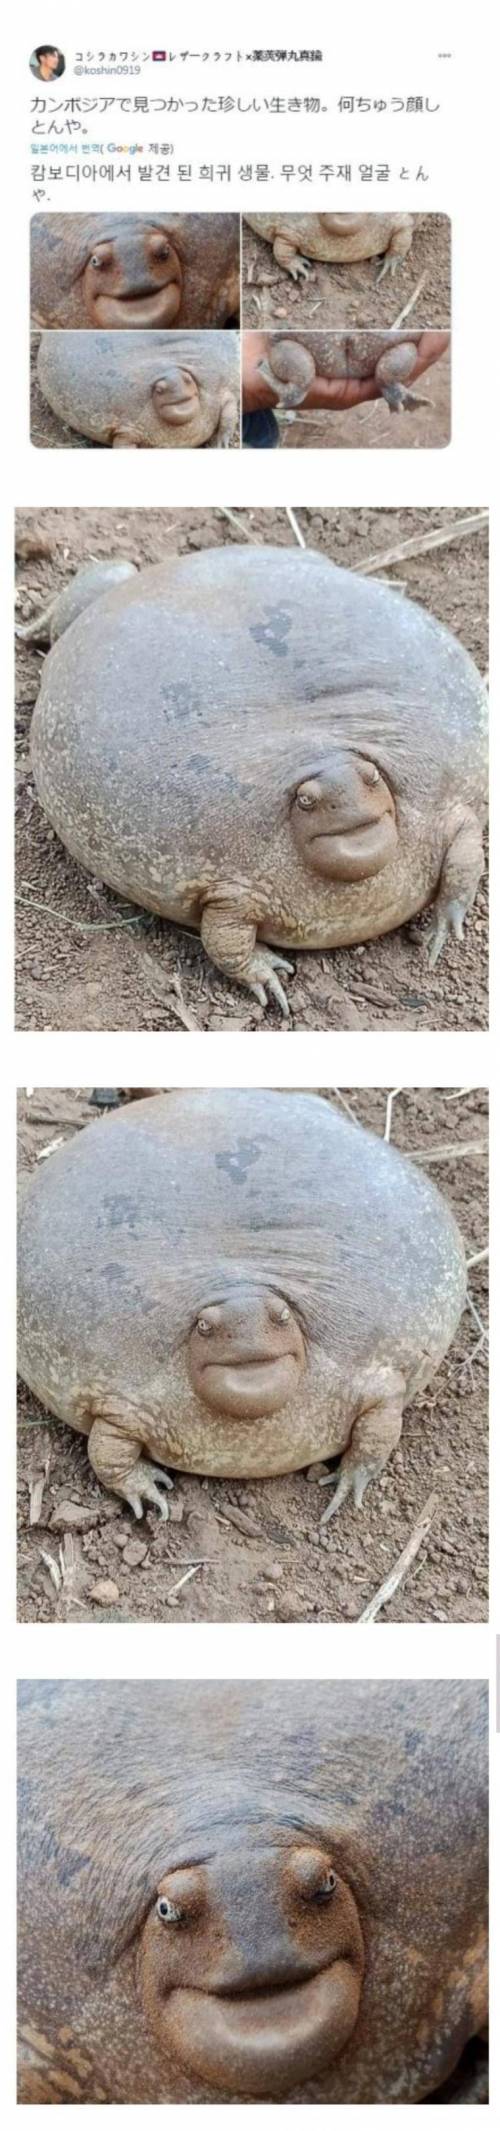 캄보디아에서 발견 된 희귀한 생물.jpg